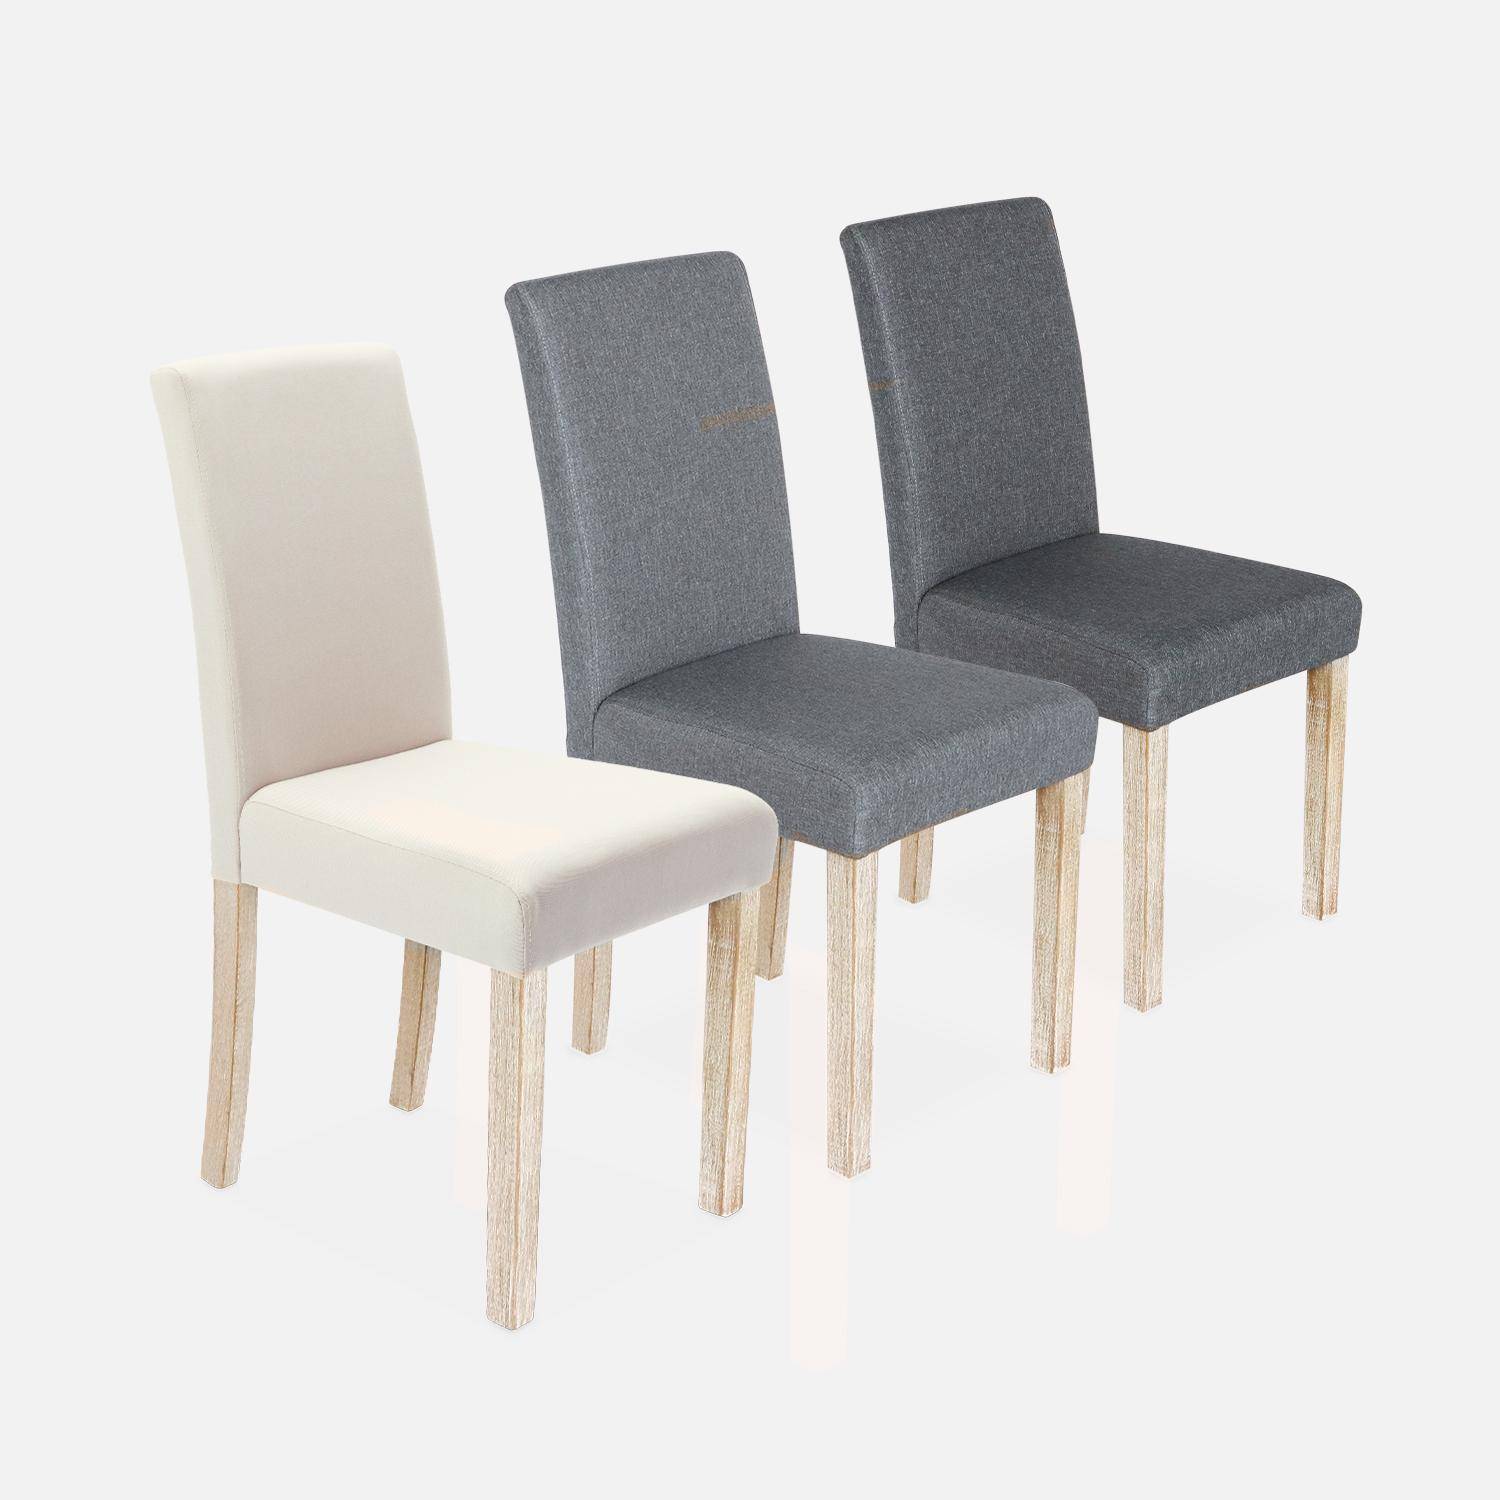 Set di 4 sedie - Rita - sedie in tessuto, gambe in legno ceruleo, grigio chiaro Photo6